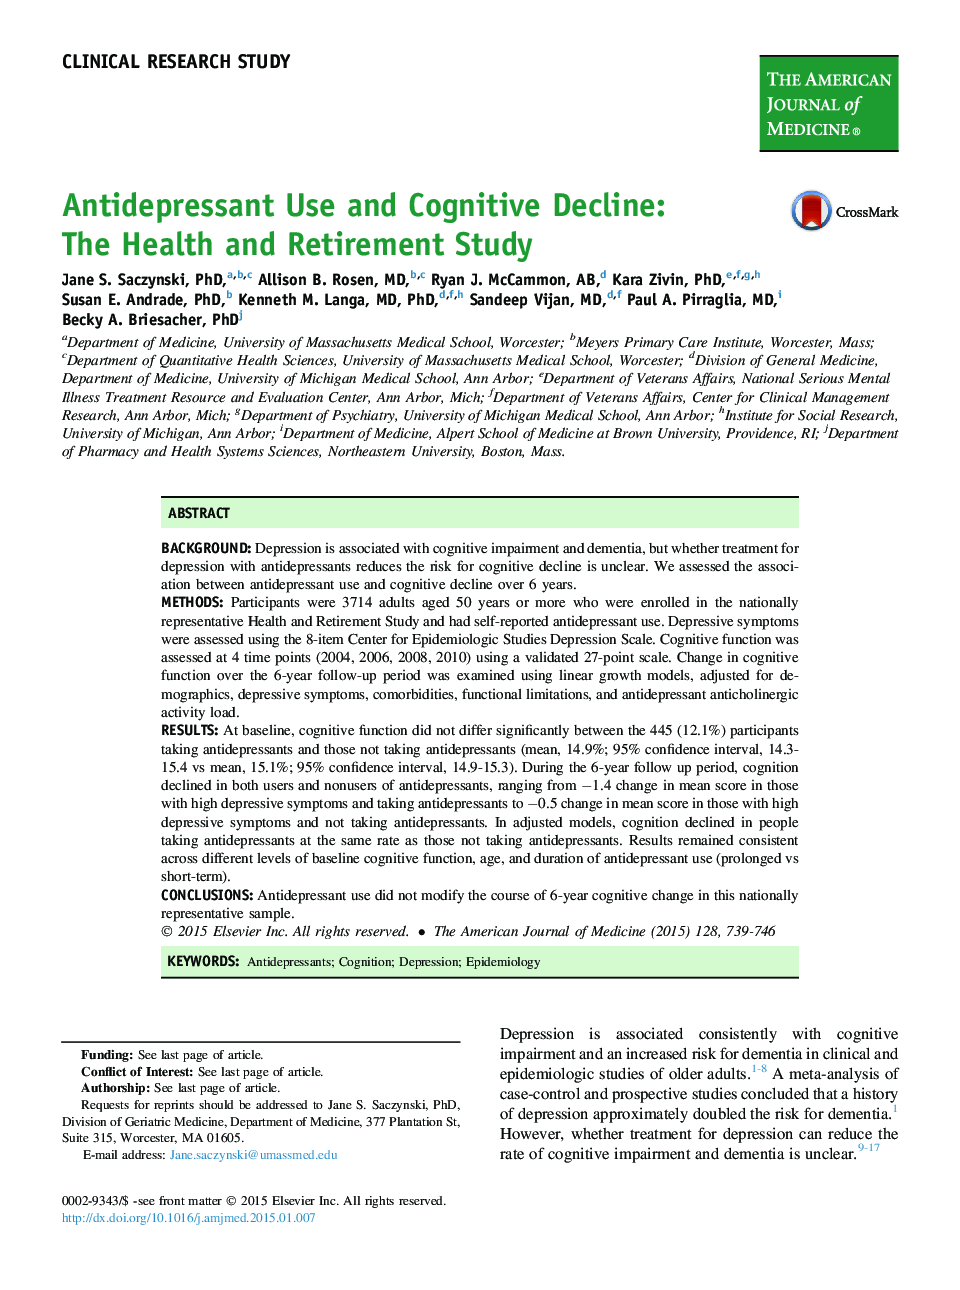 استفاده از داروهای ضد افسردگی و کاهش شناختی: مطالعه سلامت و بازنشستگی